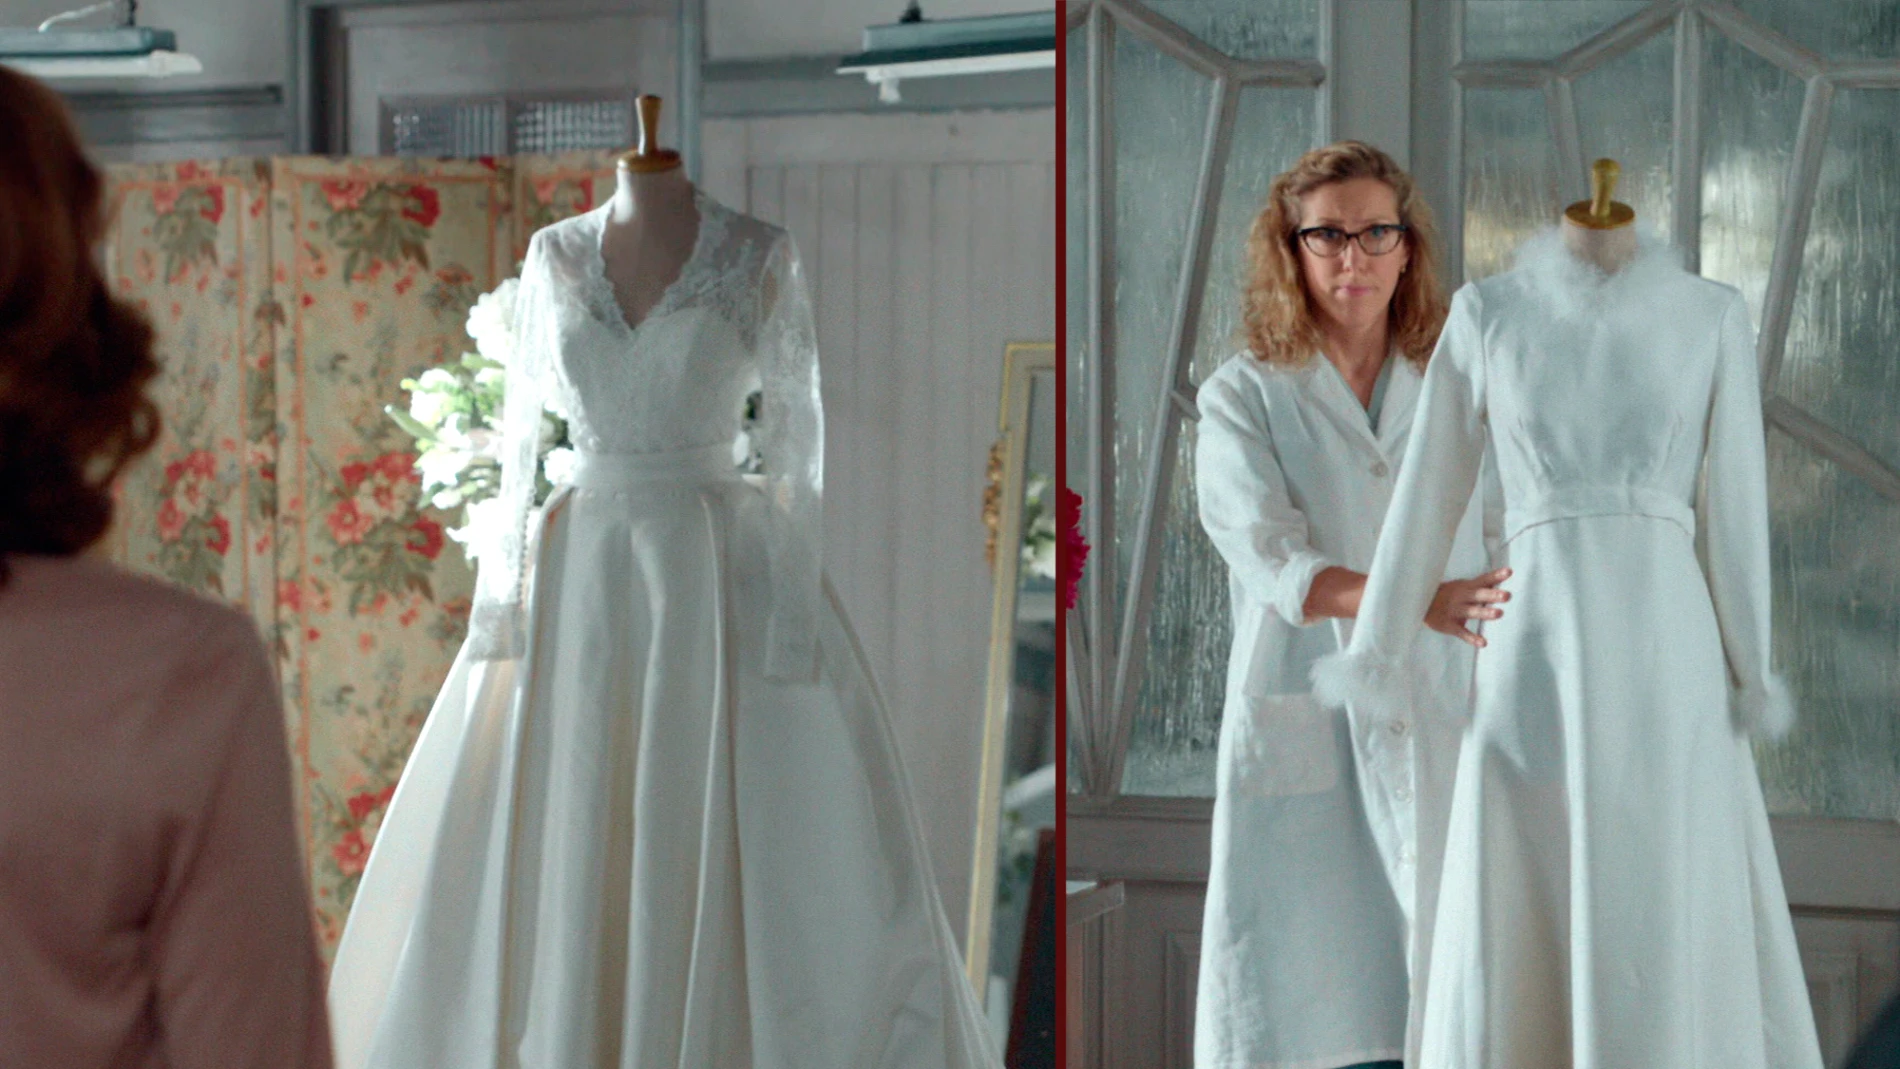 Cristina se emociona al descubrir su vestido de novia definitivo